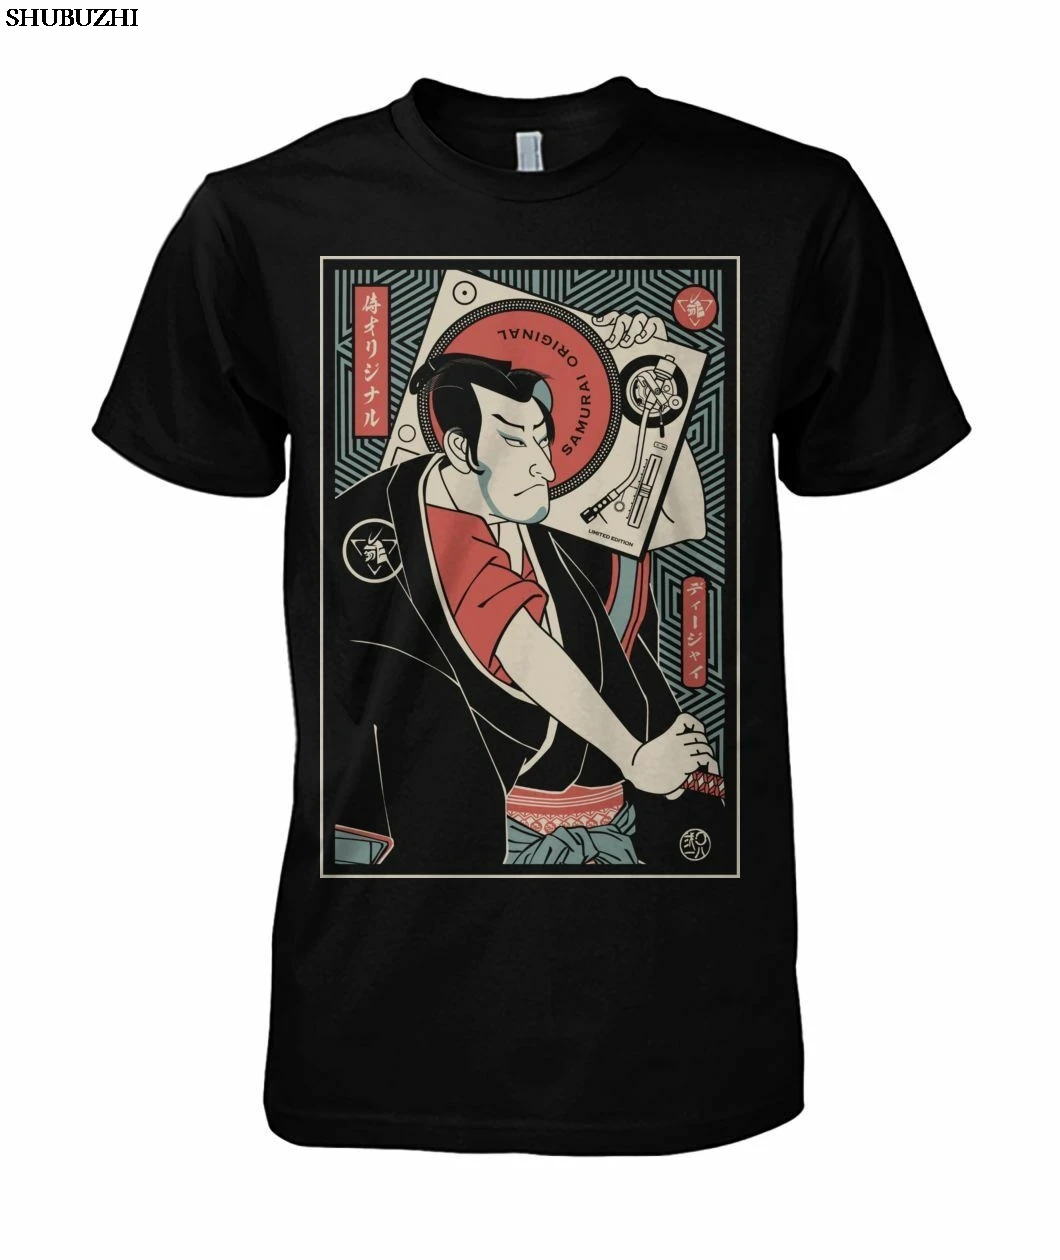 

Хлопковая модная оригинальная забавная черная футболка Dj Samurai, модная Мужская хлопковая футболка, Мужская брендовая футболка европейского ...